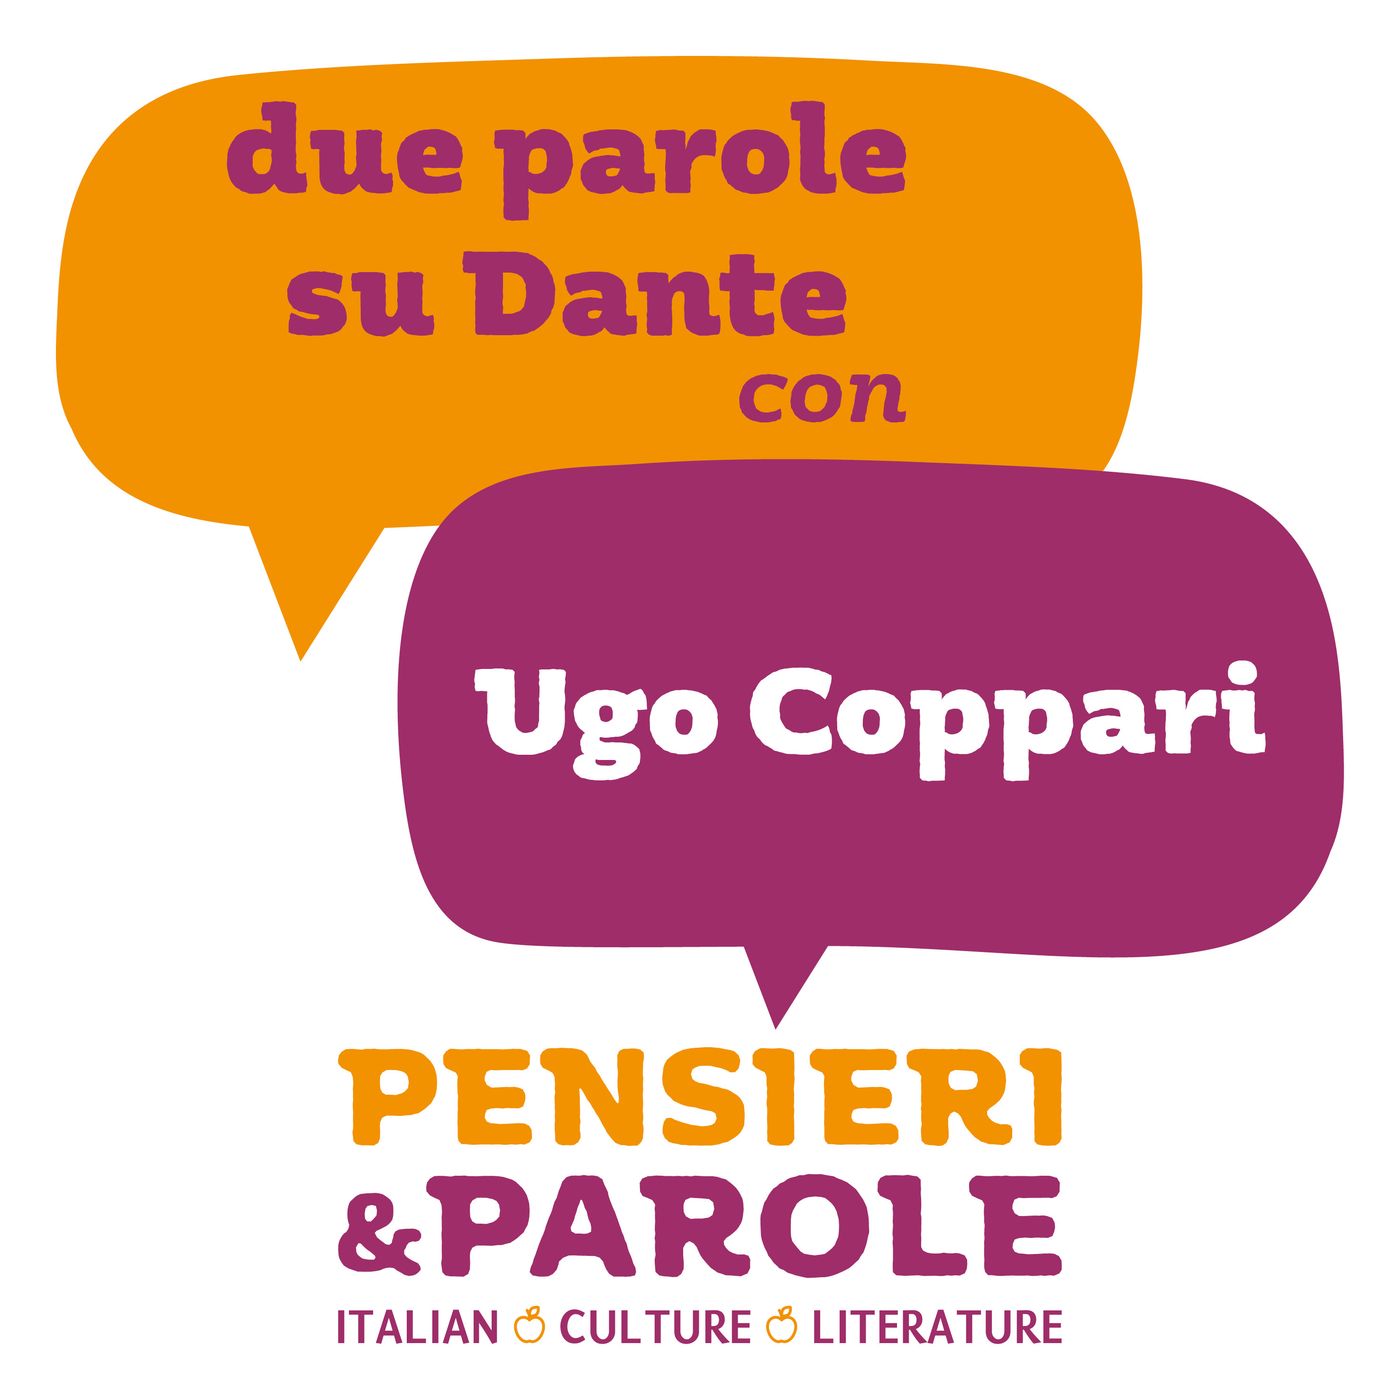 68_Due parole su Dante con Ugo Coppari